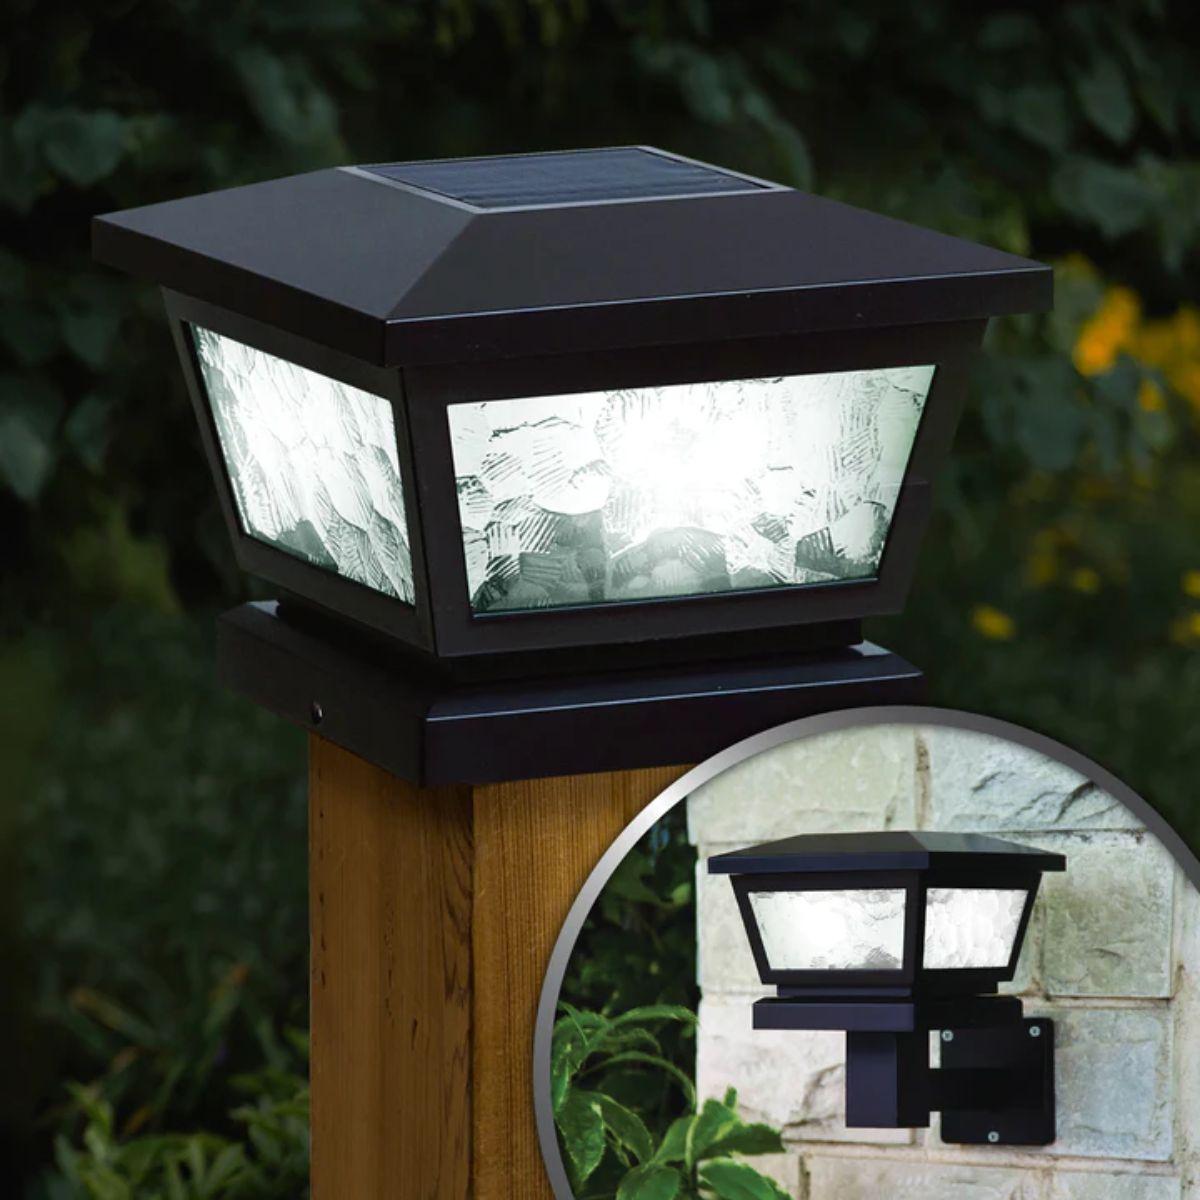 LED Solar Post Cap 5x5 -10 Lumens 4500K (Pack Of 2) - Bees Lighting